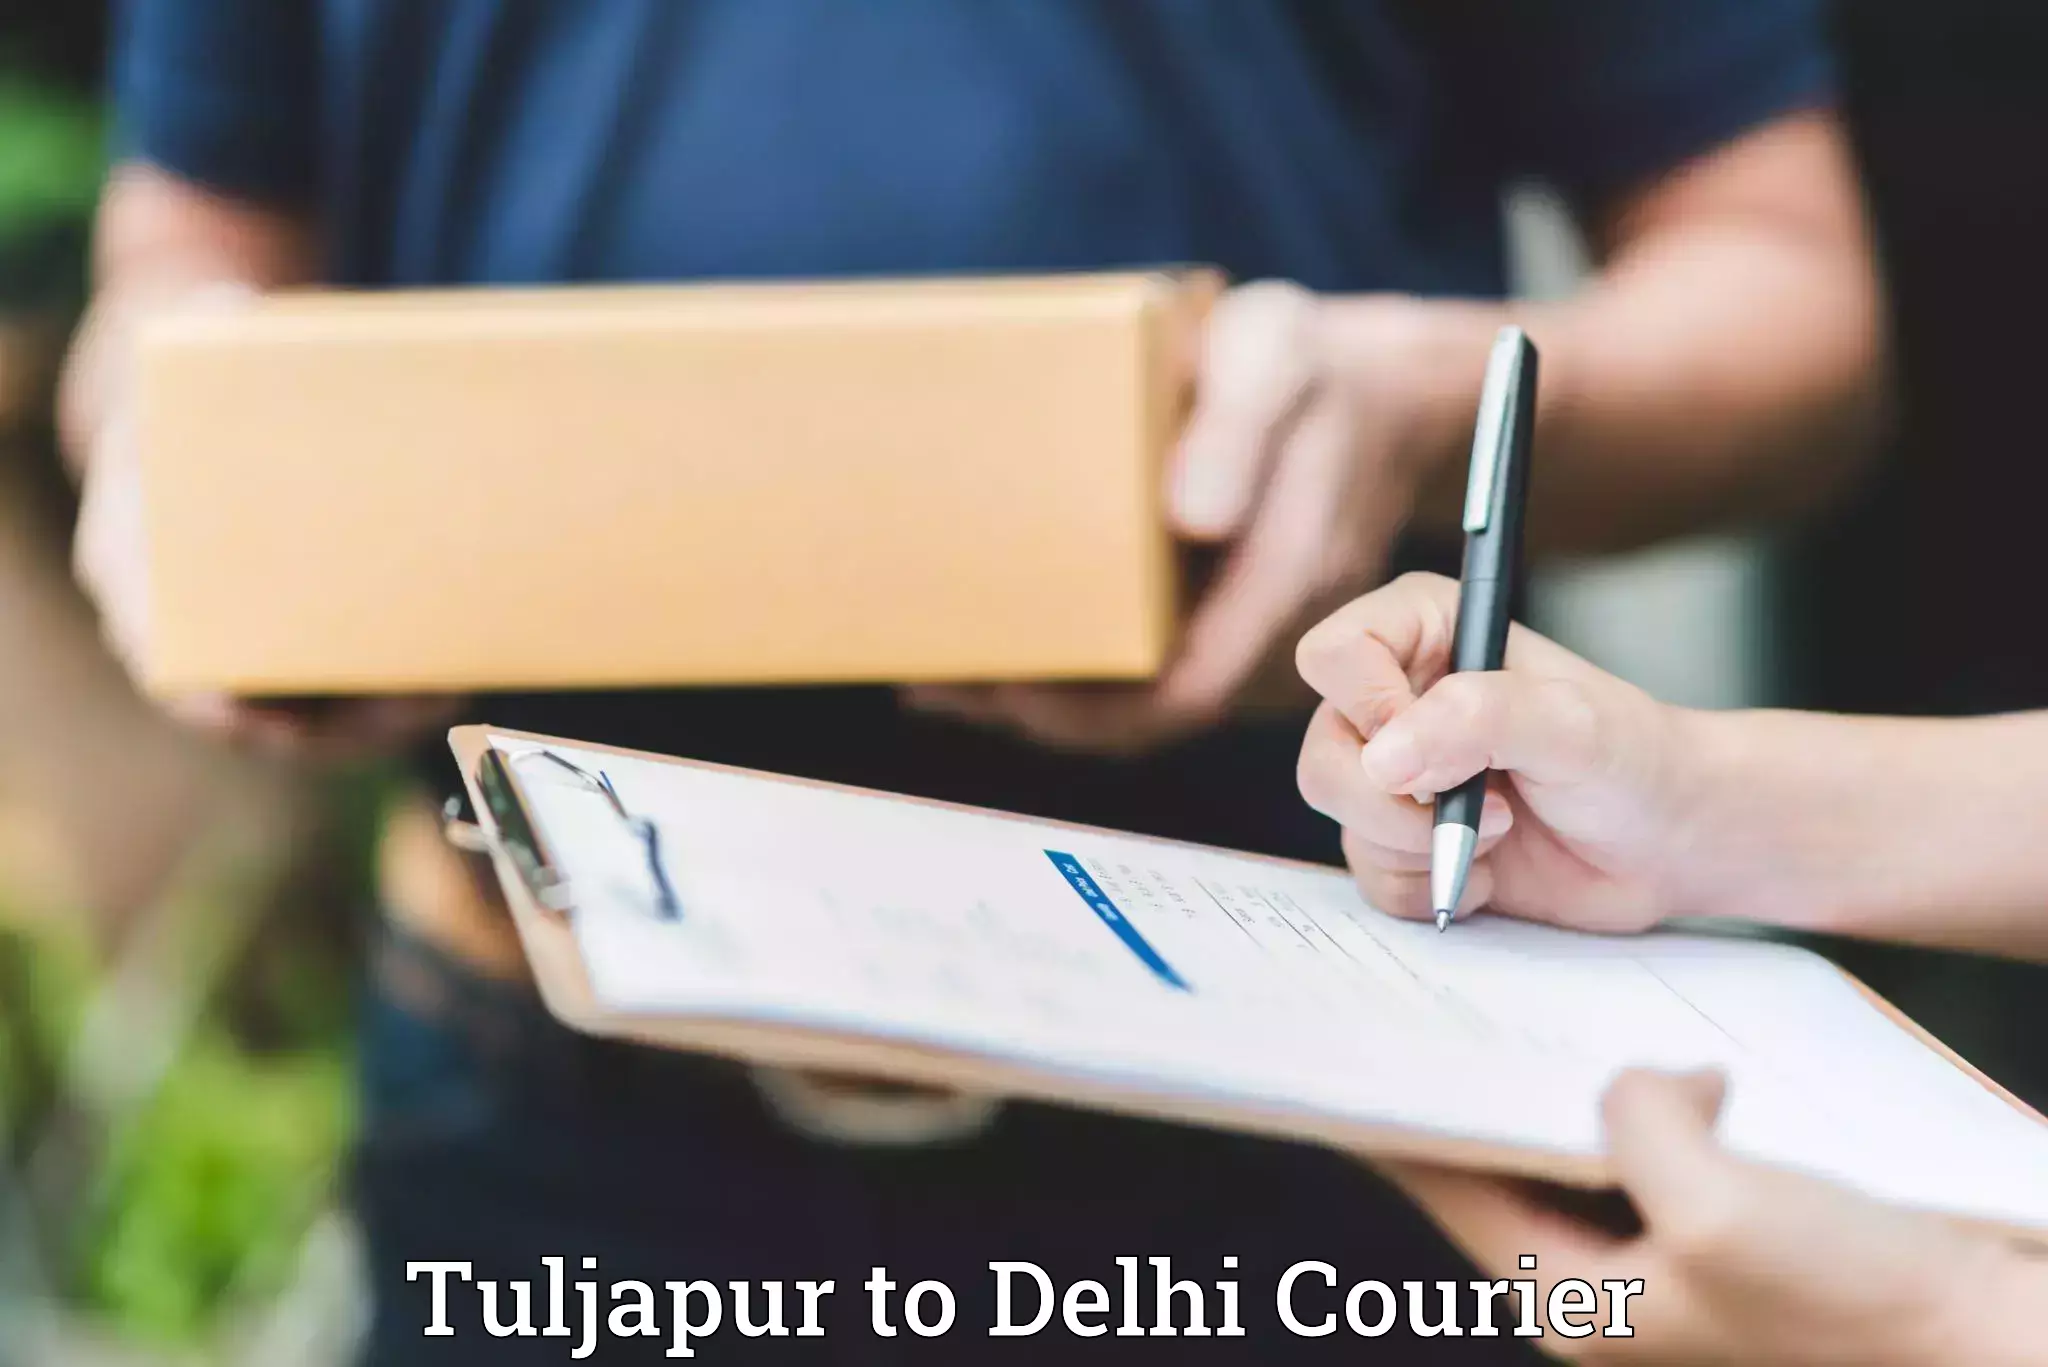 Luggage transport rates calculator Tuljapur to IIT Delhi